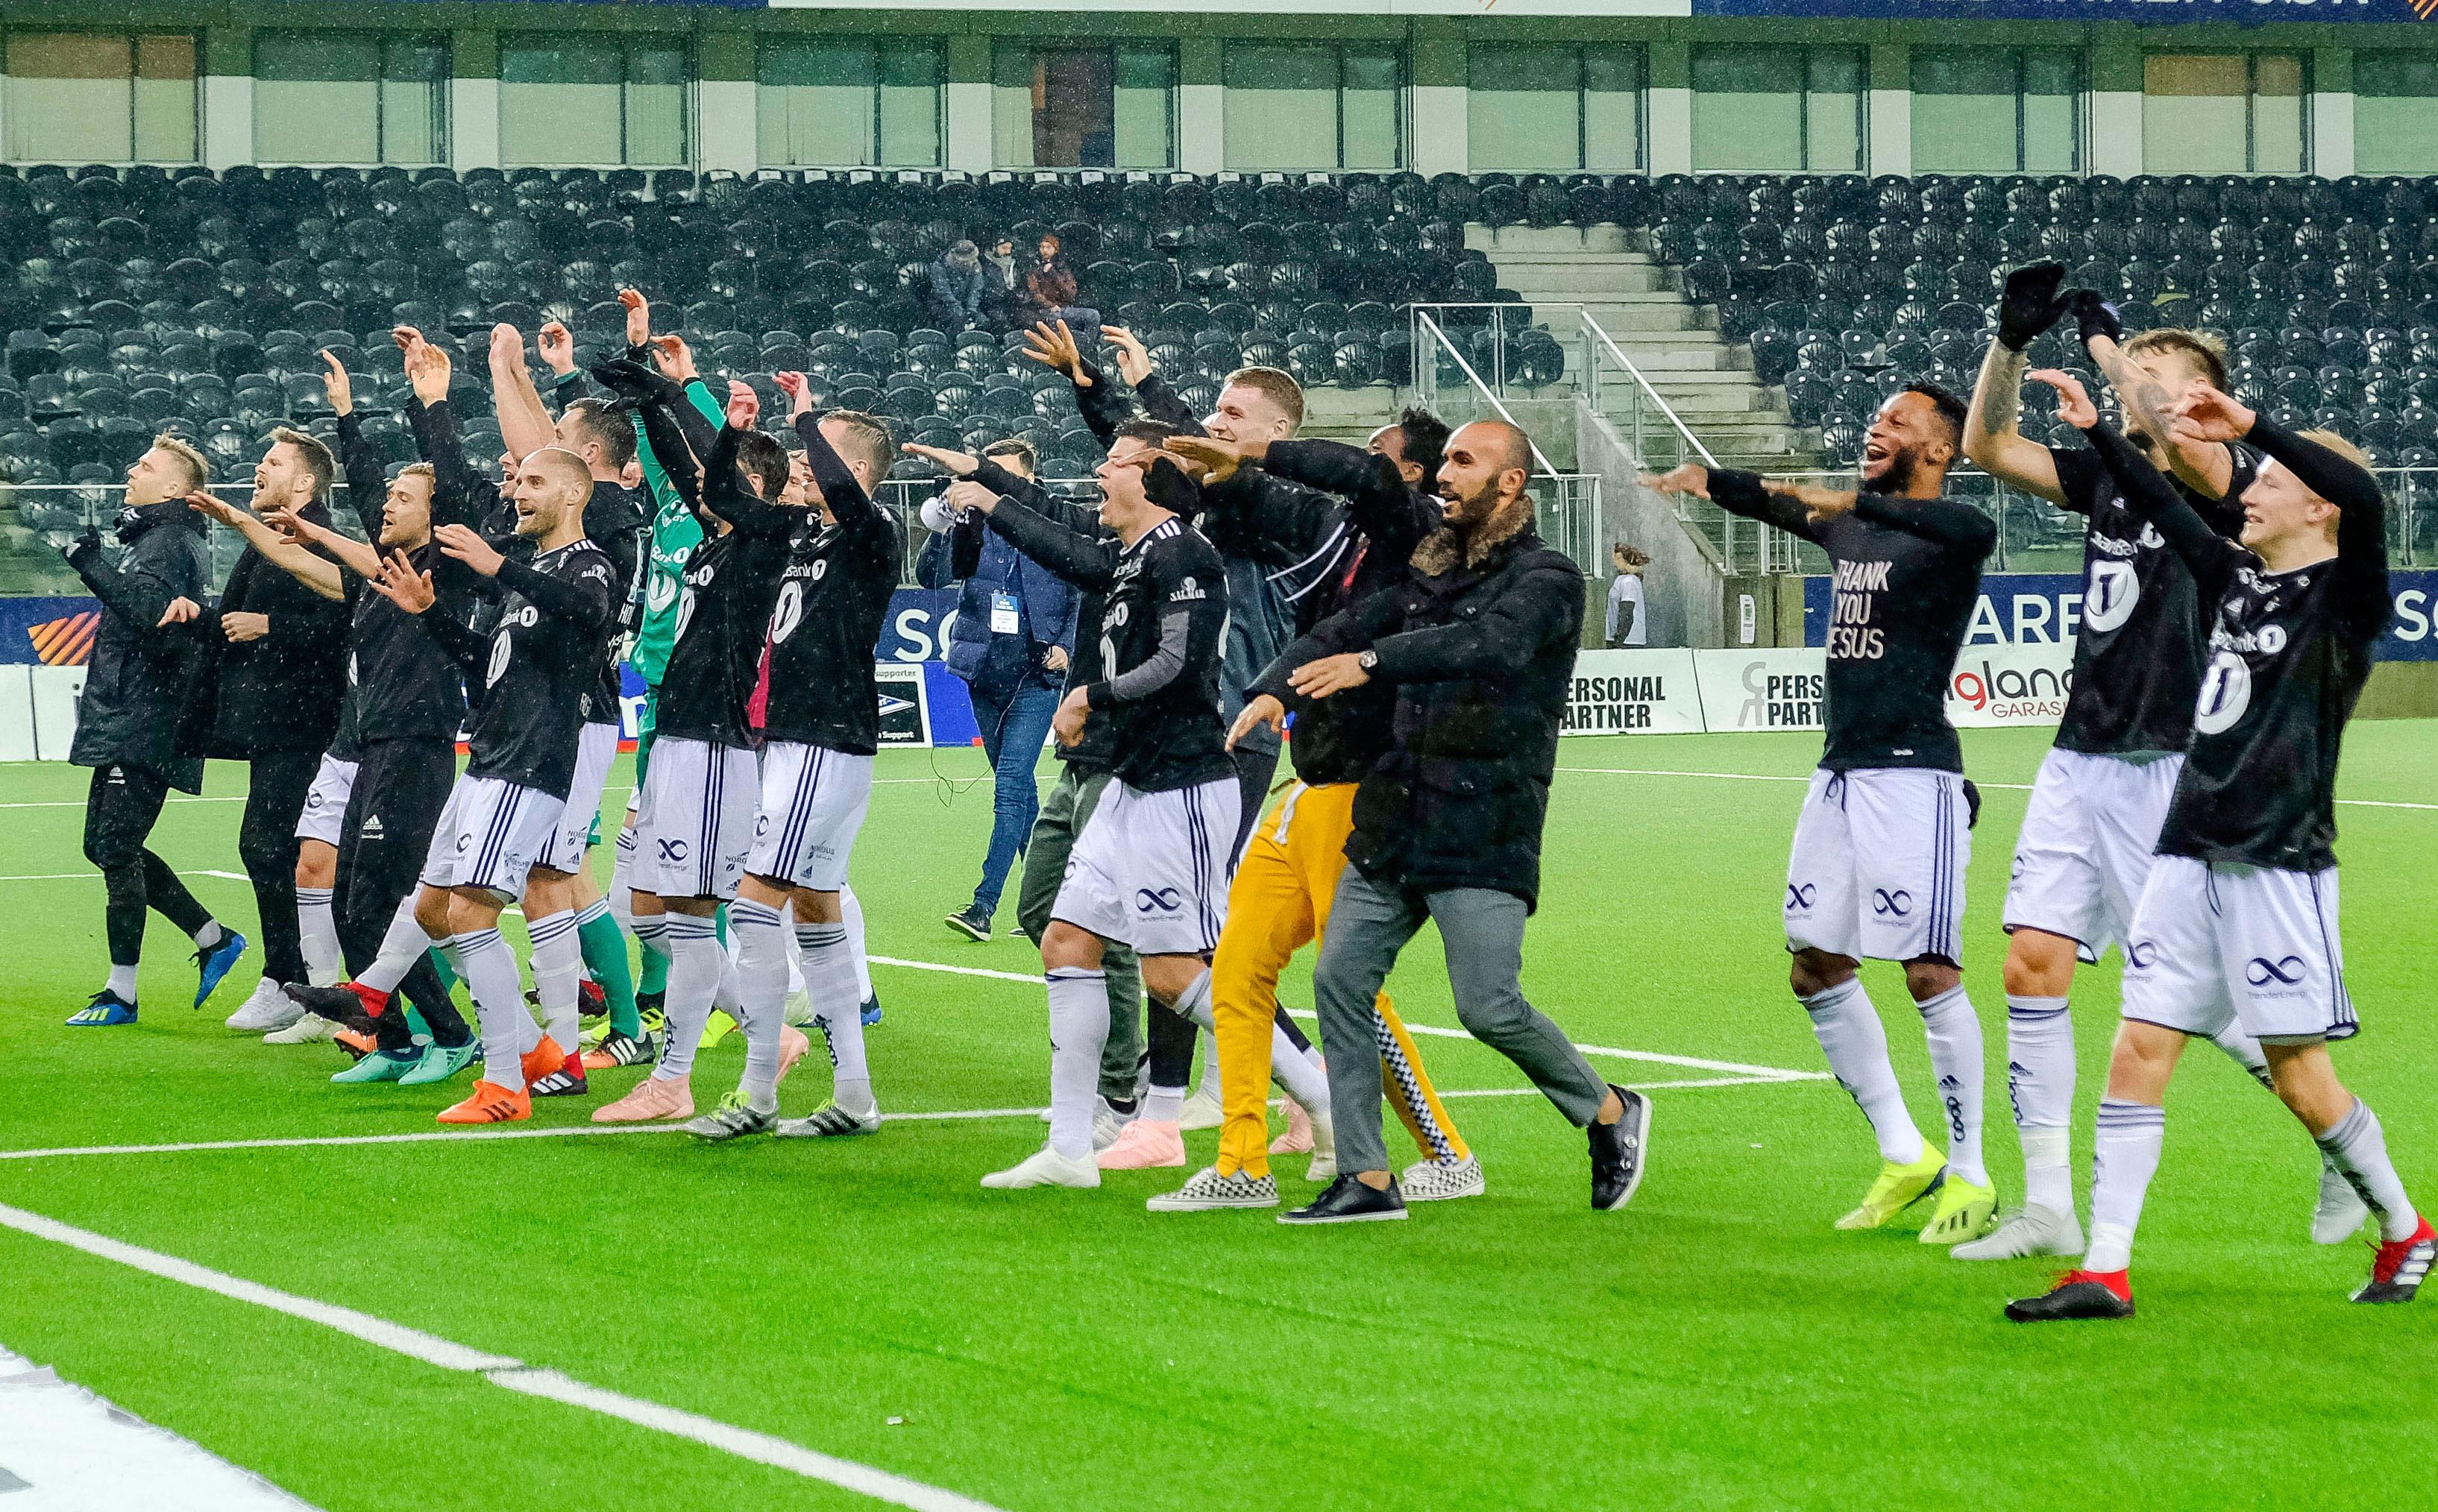 Rosenborg vinner Eliteserien